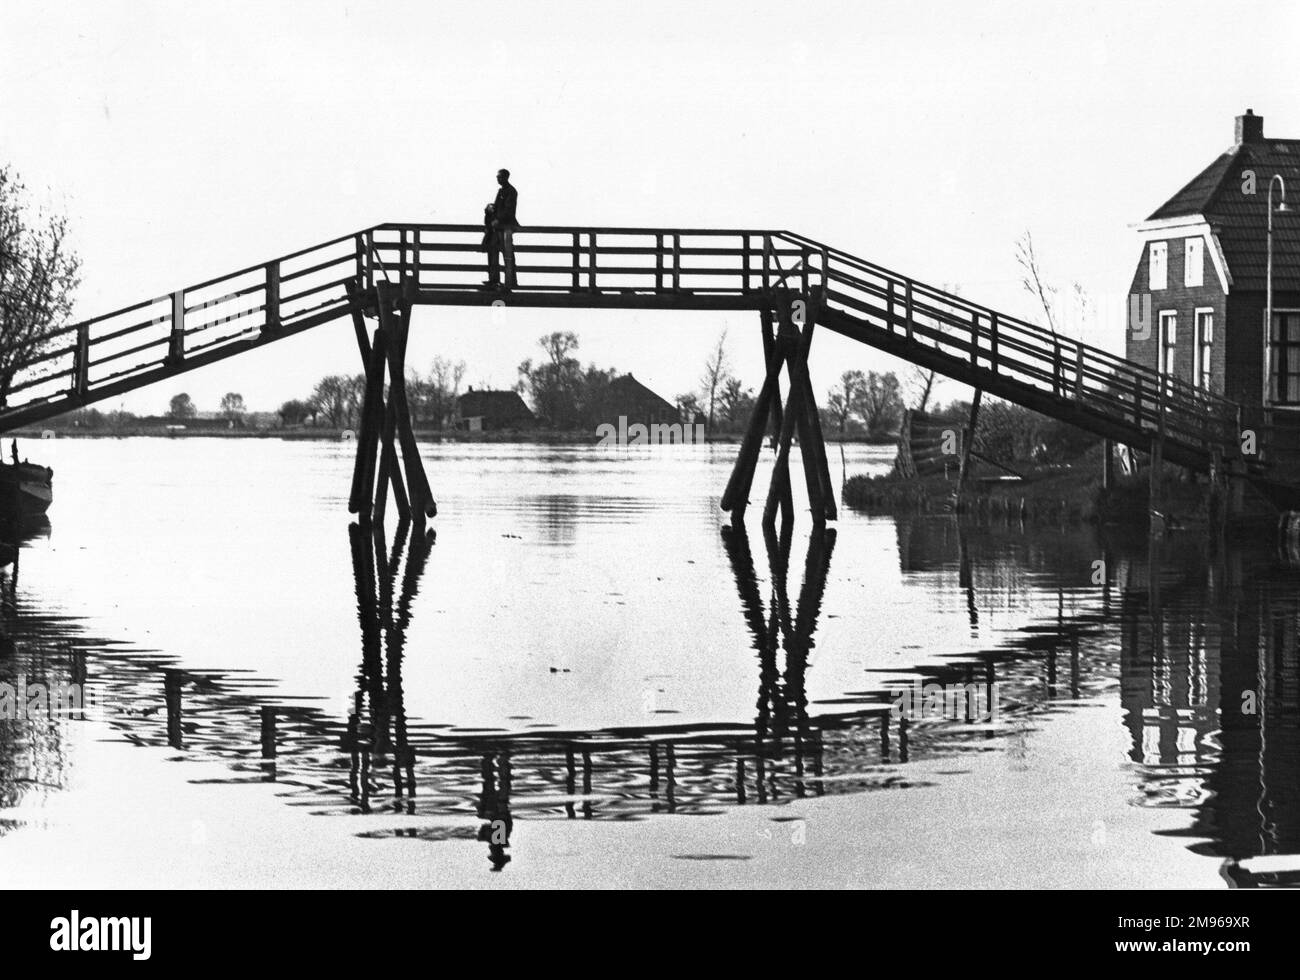 Eine Brücke in Silhouette über einen Wasserabschnitt, zusammen mit ihrer Reflexion. Stockfoto